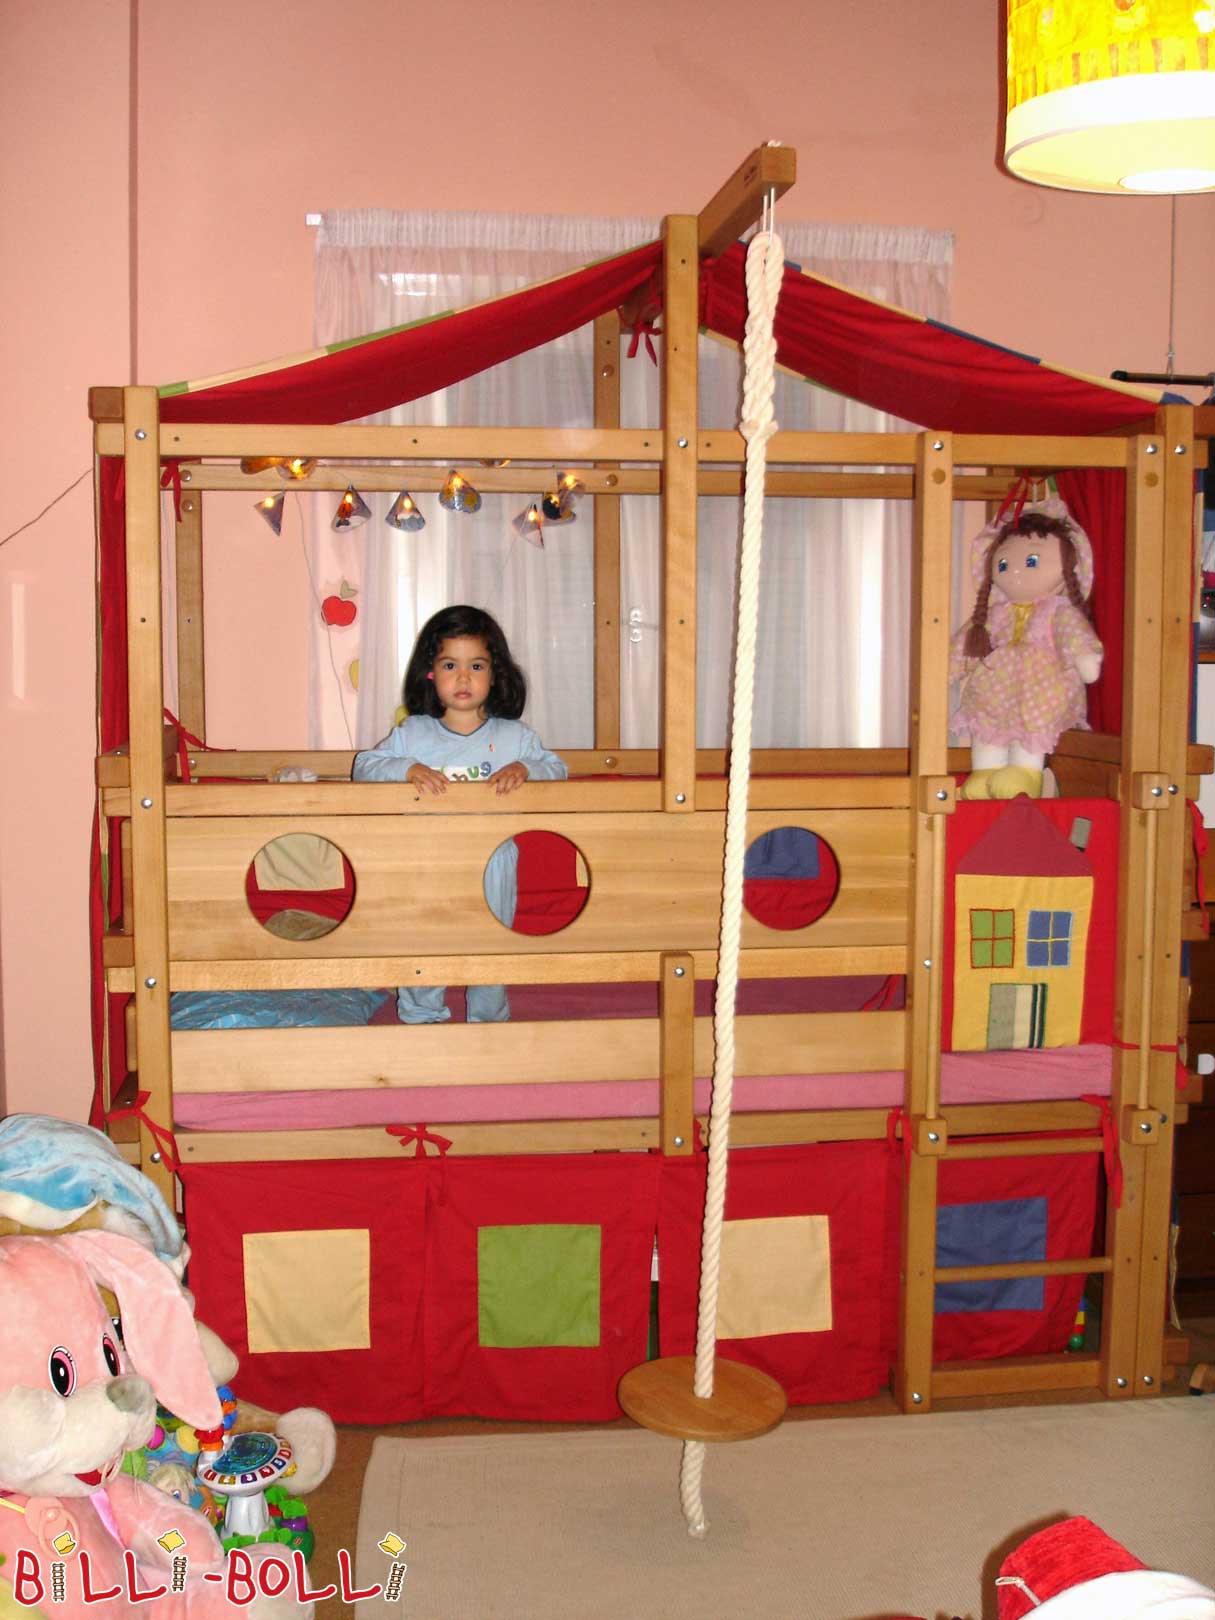 Barnas loft seng laget av bøk i høyde for småbarn (Loftseng vokser med barnet)